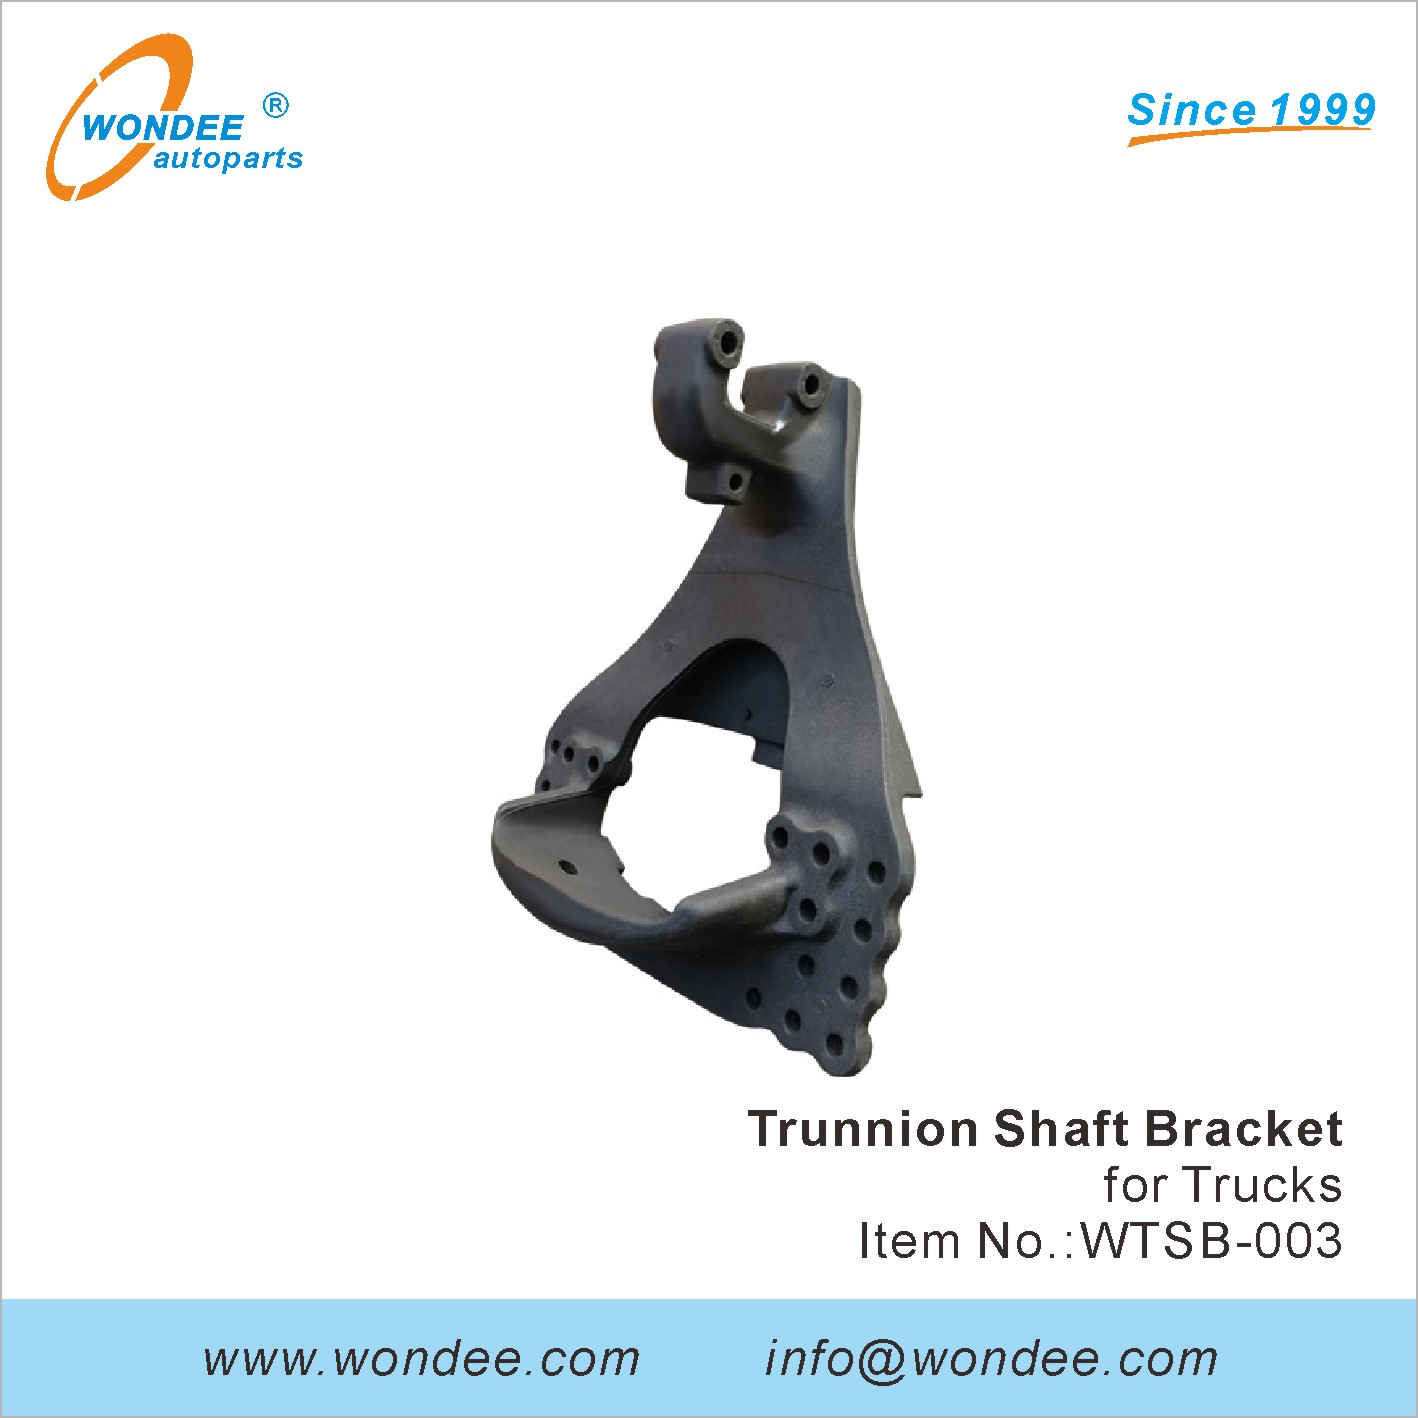 WONDEE trunnion shaft bracket (3)